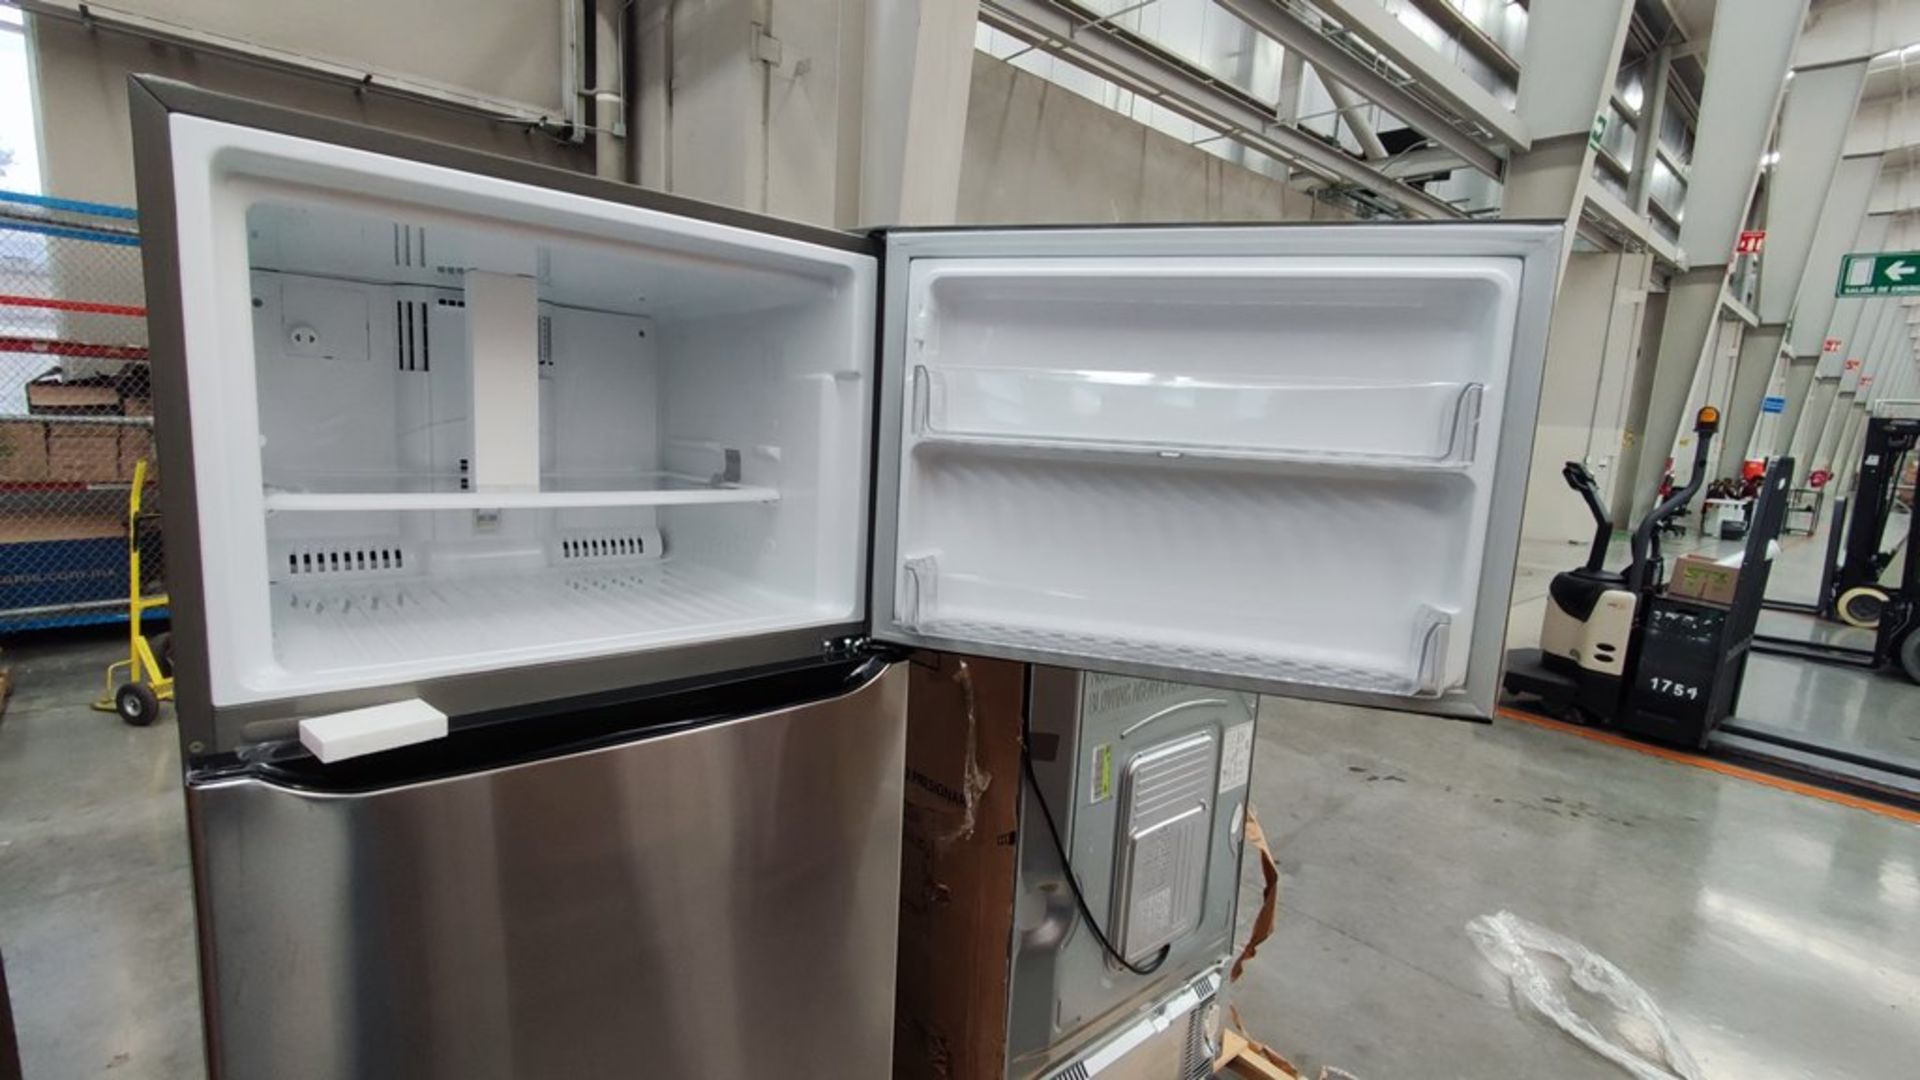 1 Refrigerador Marca LG, Modelo LT57BPSX, Serie 111MRXX34994, Color Gris, Favor de inspeccionar. (N - Image 7 of 11